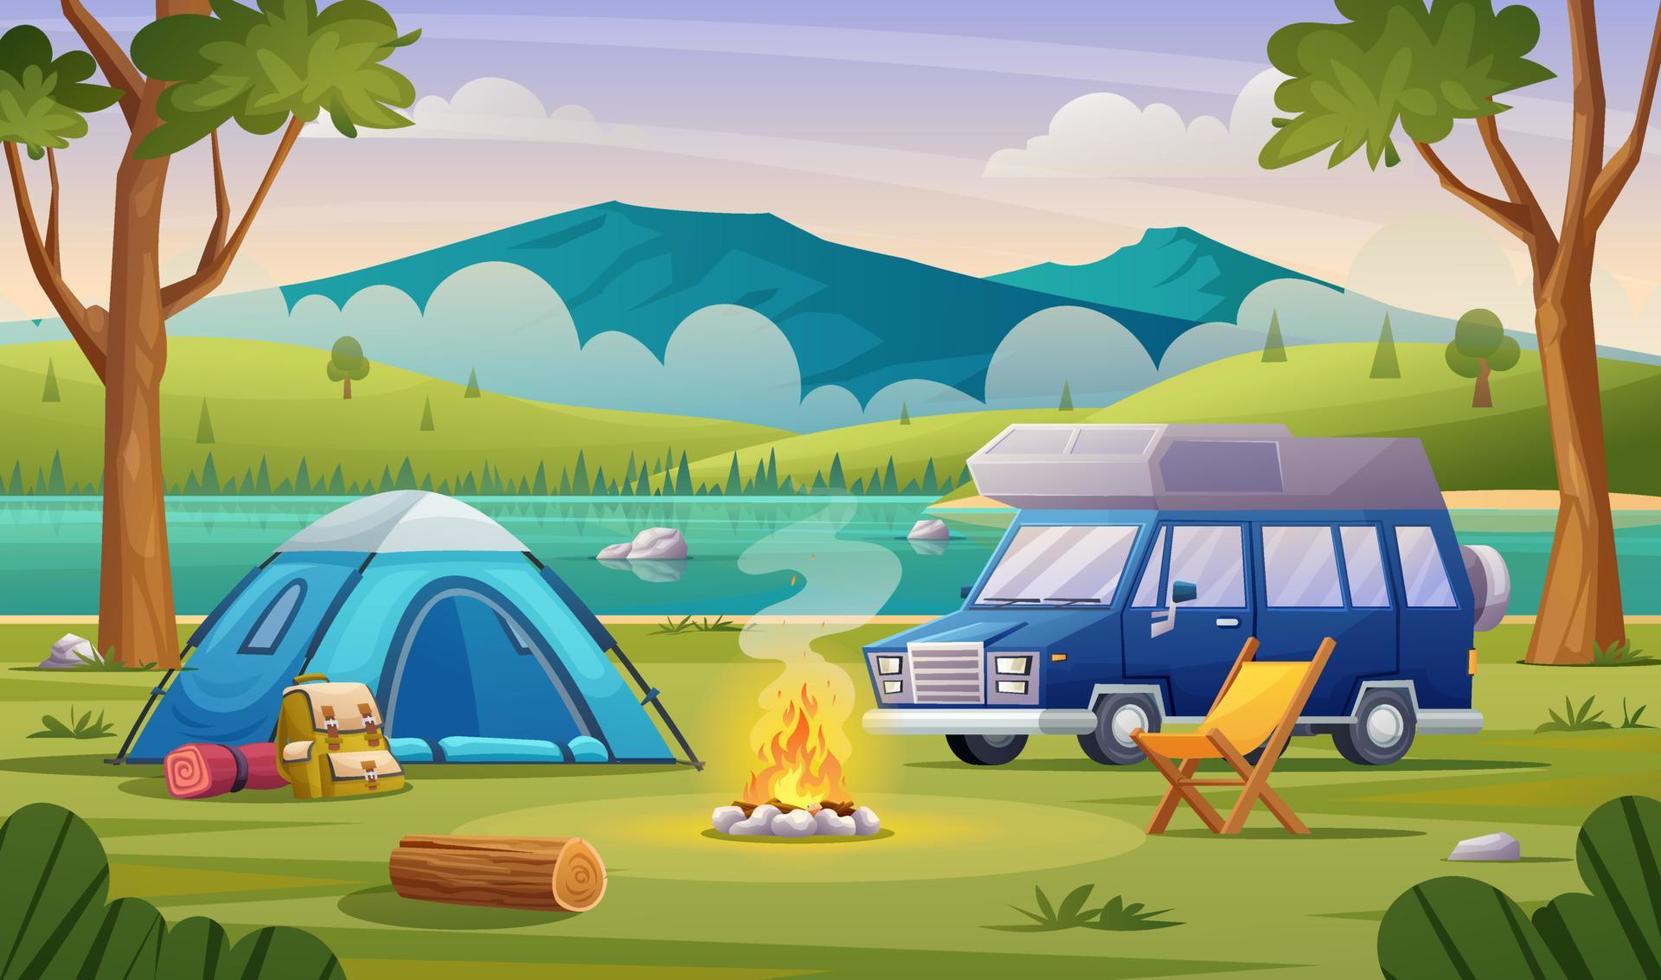 natuurkampconcept met tent, kampvuur, rugzak en busje. campinglandschap met illustratie van het uitzicht op de bergen en het meer vector